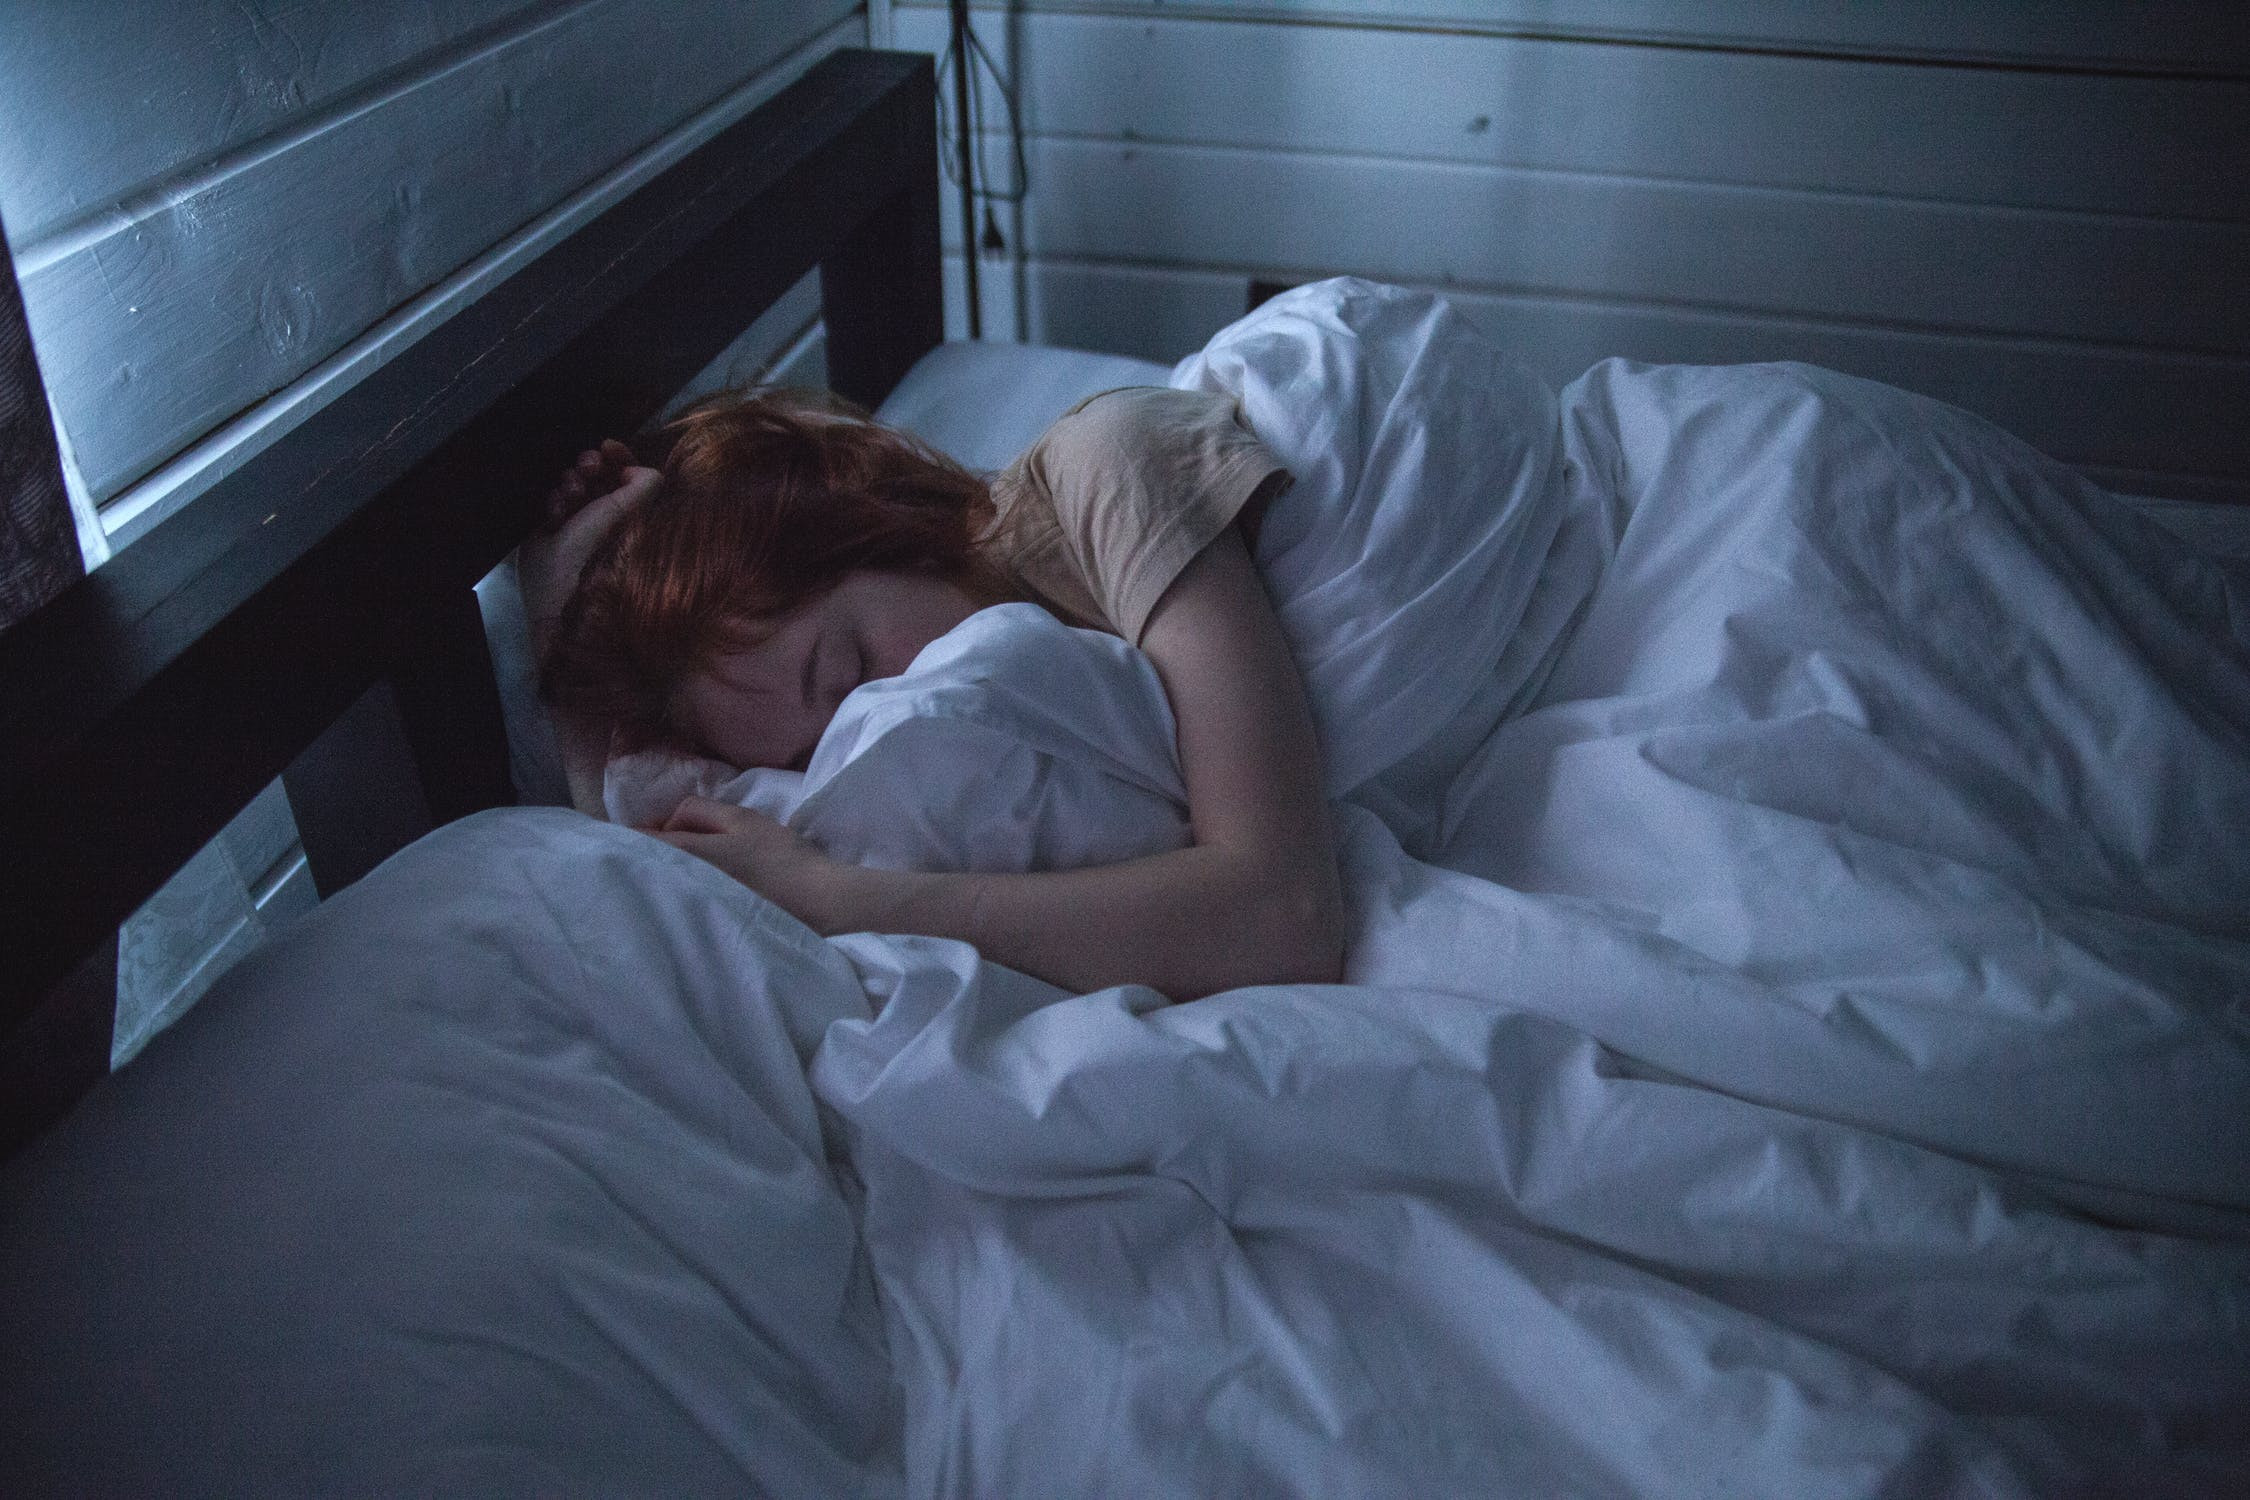 Η μακρόχρονη χρήση φαρμάκων για την αϋπνία δεν φέρνει καλύτερο ύπνο